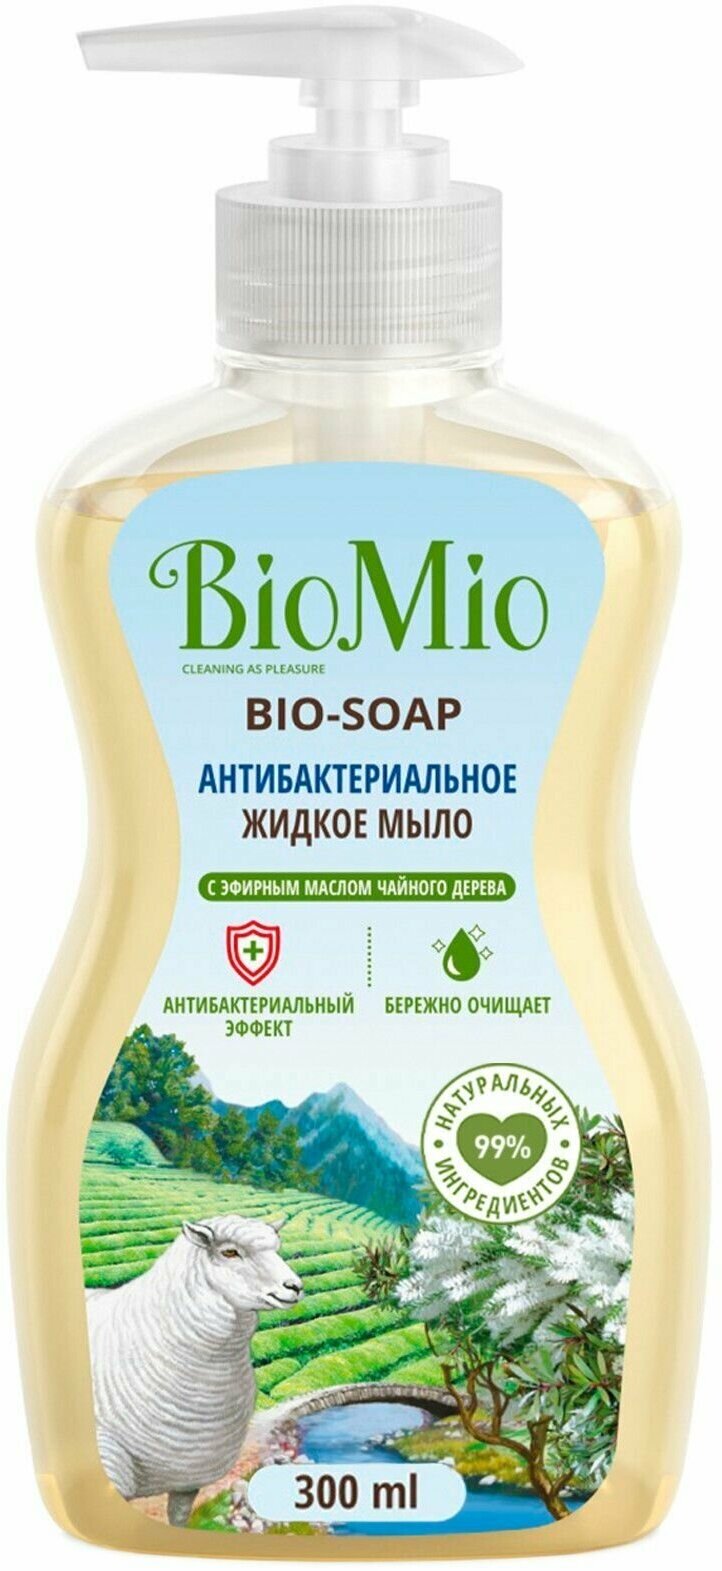 BioMio Мыло антибактериальное жидкое "Bio-soap" с маслом чайного дерева 300 мл